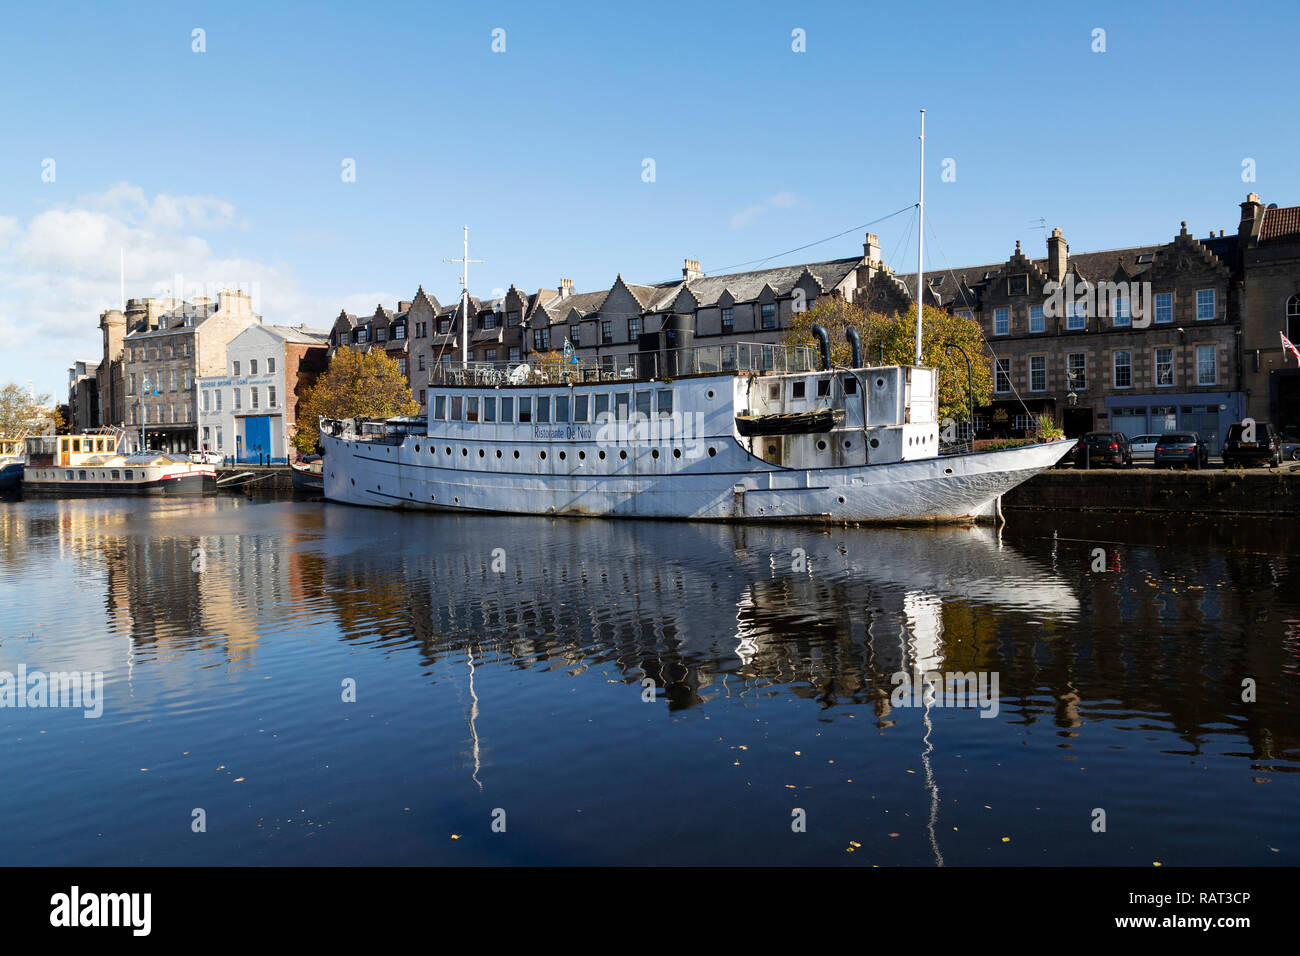 Das Ristorante De Niro in Leith in Edinburgh, Schottland. Das Wasser des Leith fließt in die Firth-of-Forth in Leith. Stockfoto